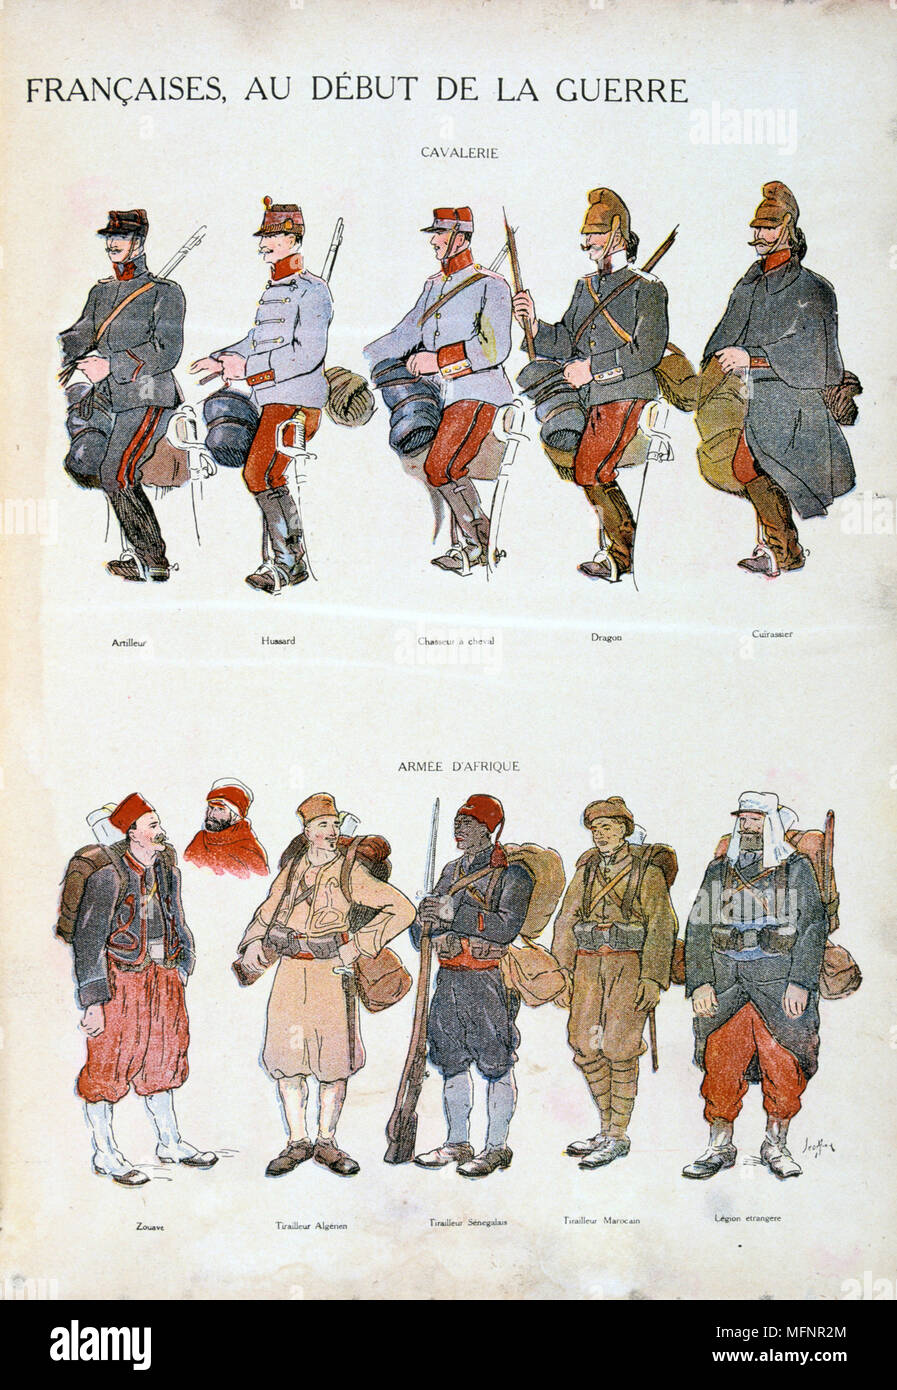 L'uniforme militaire français pendant la Première Guerre mondiale, 1914-1918. Top : la cavalerie. En bas : des forces africaines. Impression couleur Banque D'Images